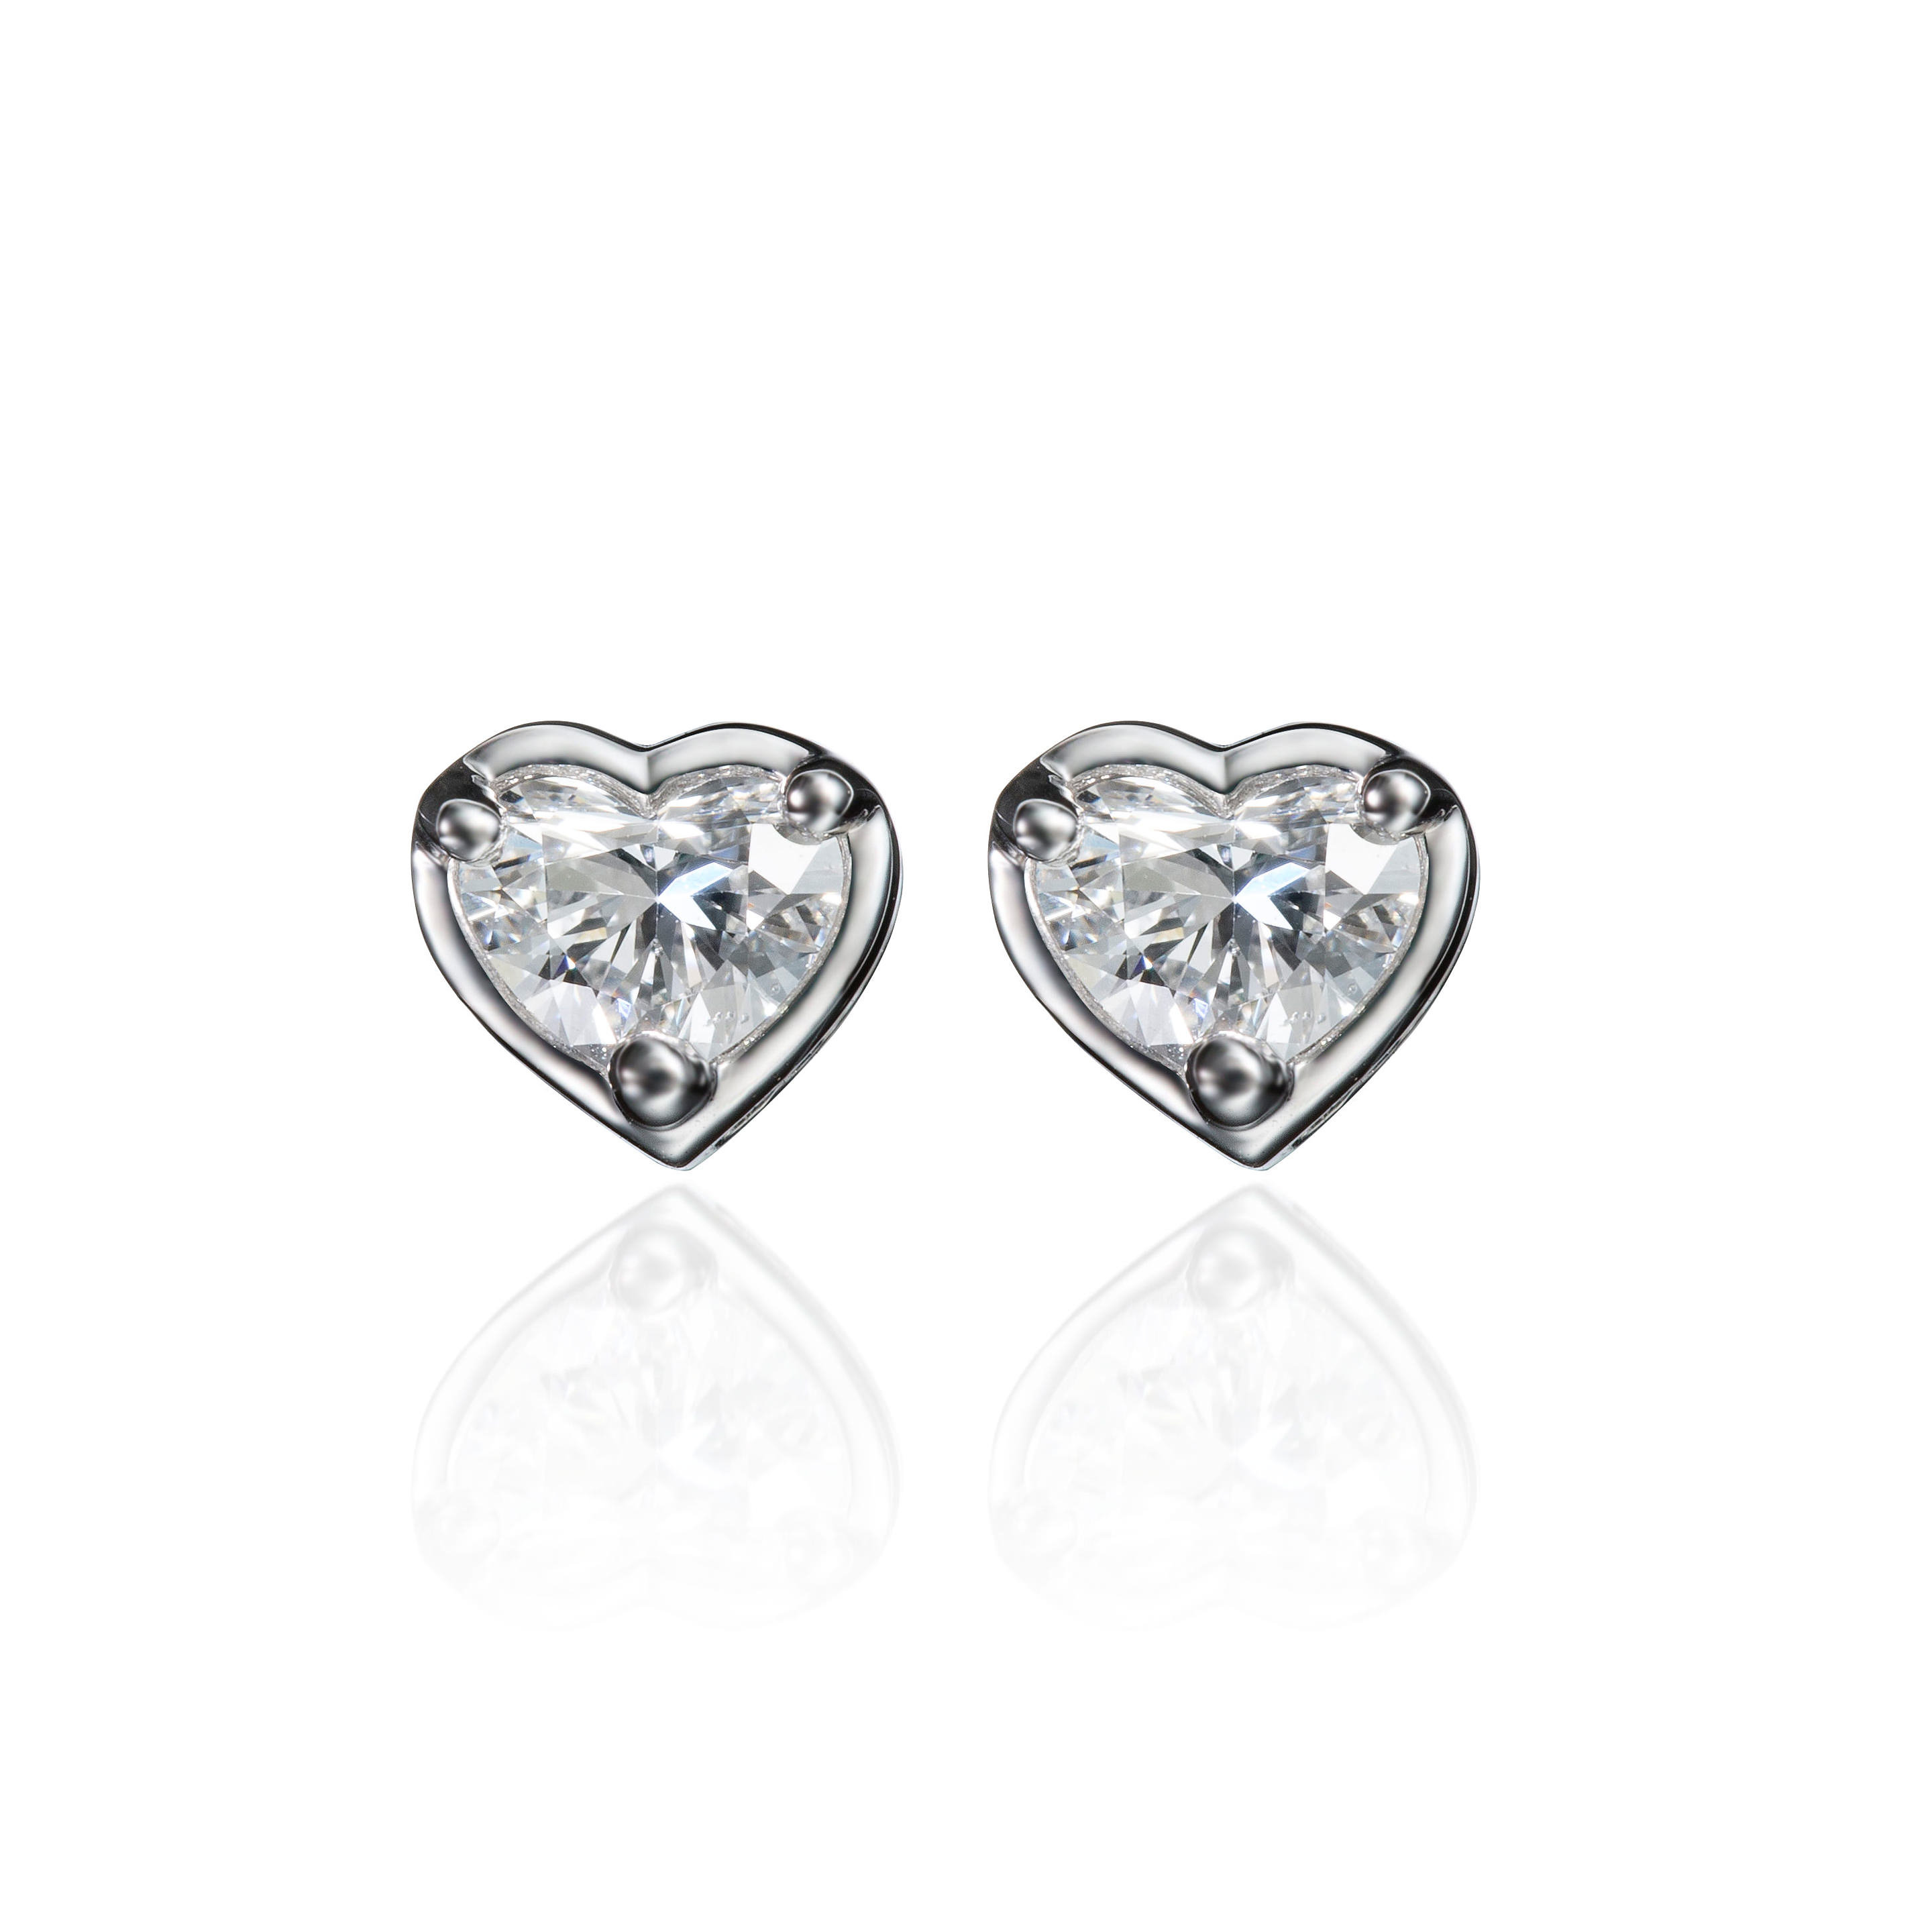 Heart shaped Diamond Stud Earrings